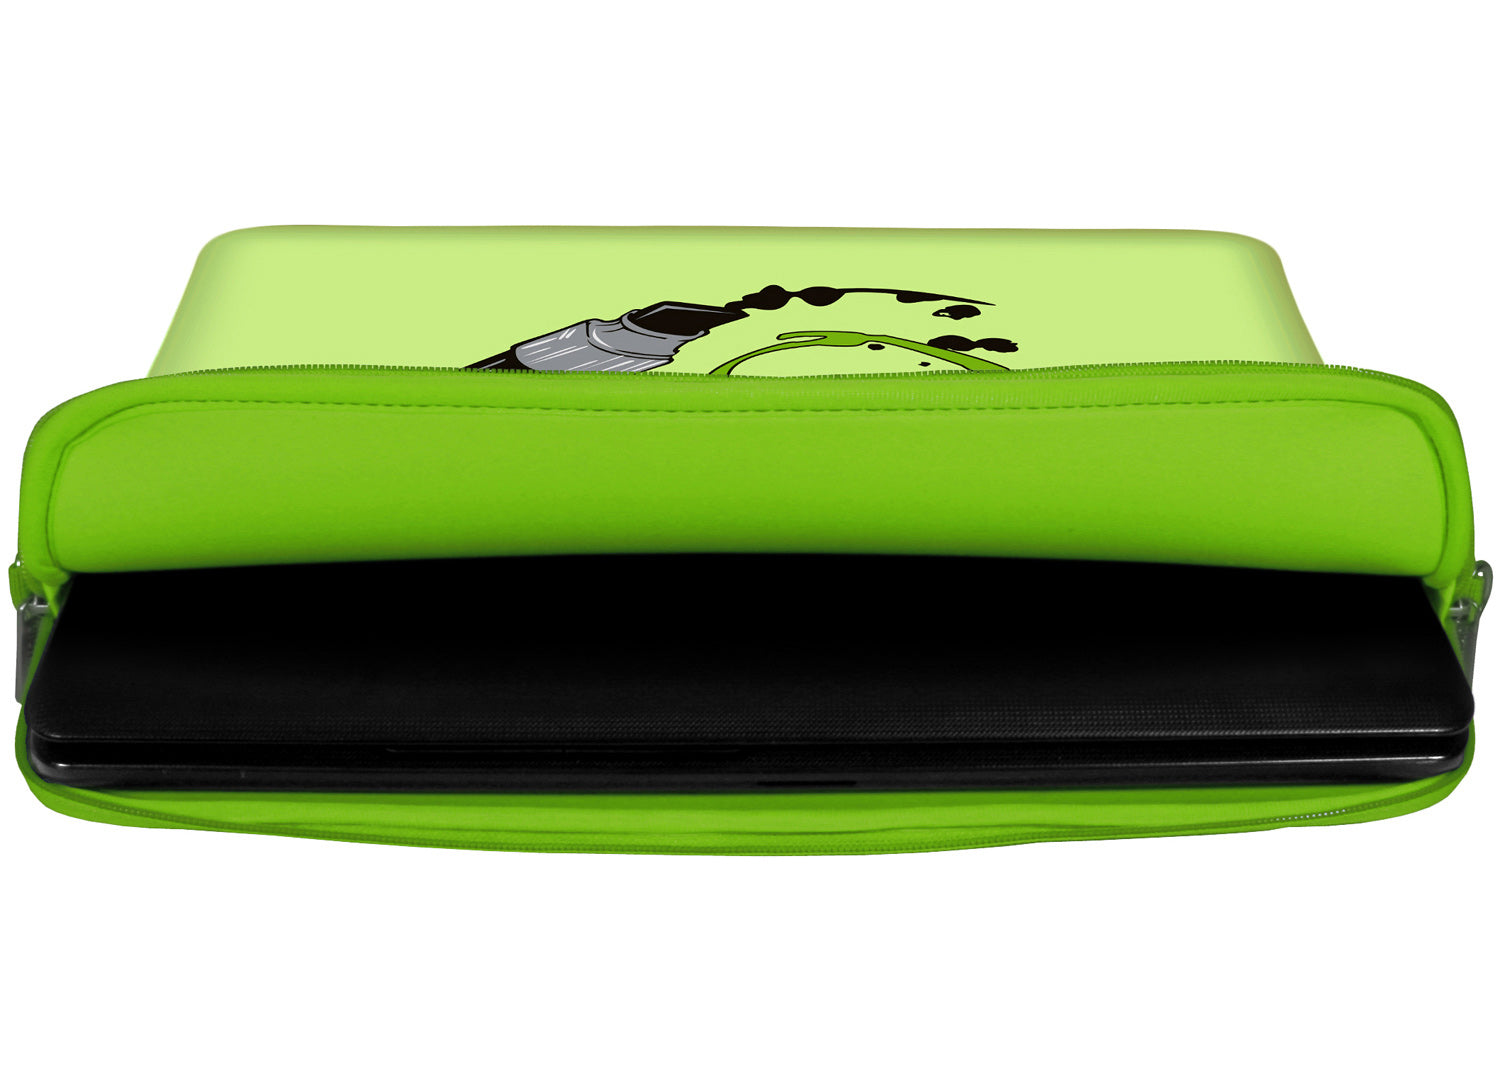 Innenansicht mit Schutzlippen der LS164 Apple Pen Designer Laptop Tasche in grün aus wasserabweisendem Neopren